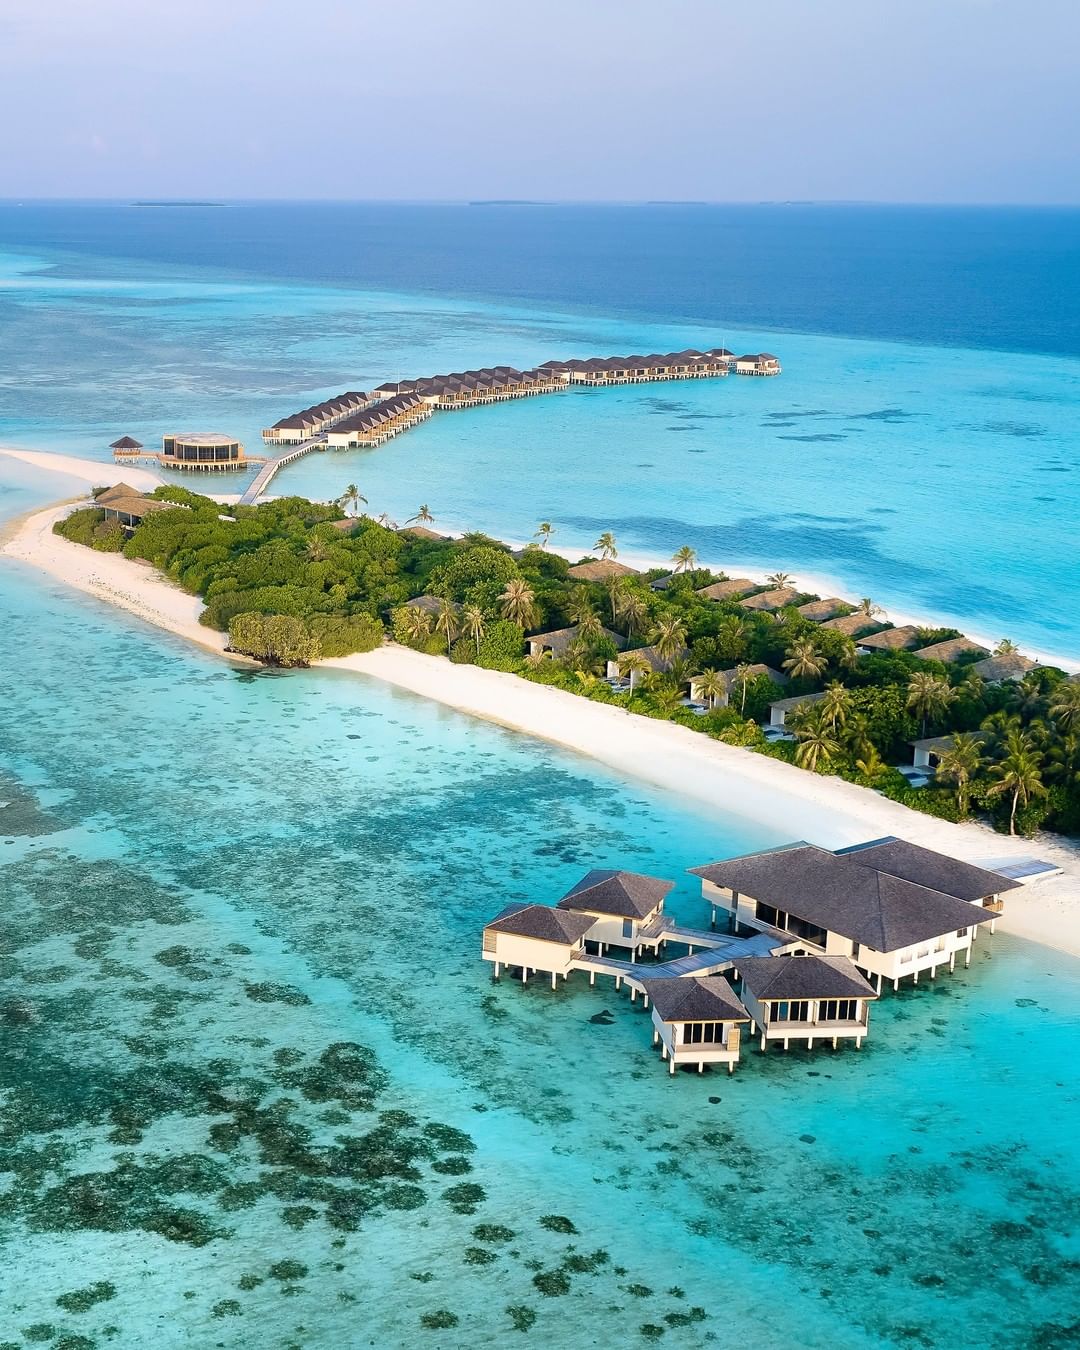  艾美酒店 Le Meridien Maldives Resort & Spa 鸟瞰地图birdview map清晰版 马尔代夫